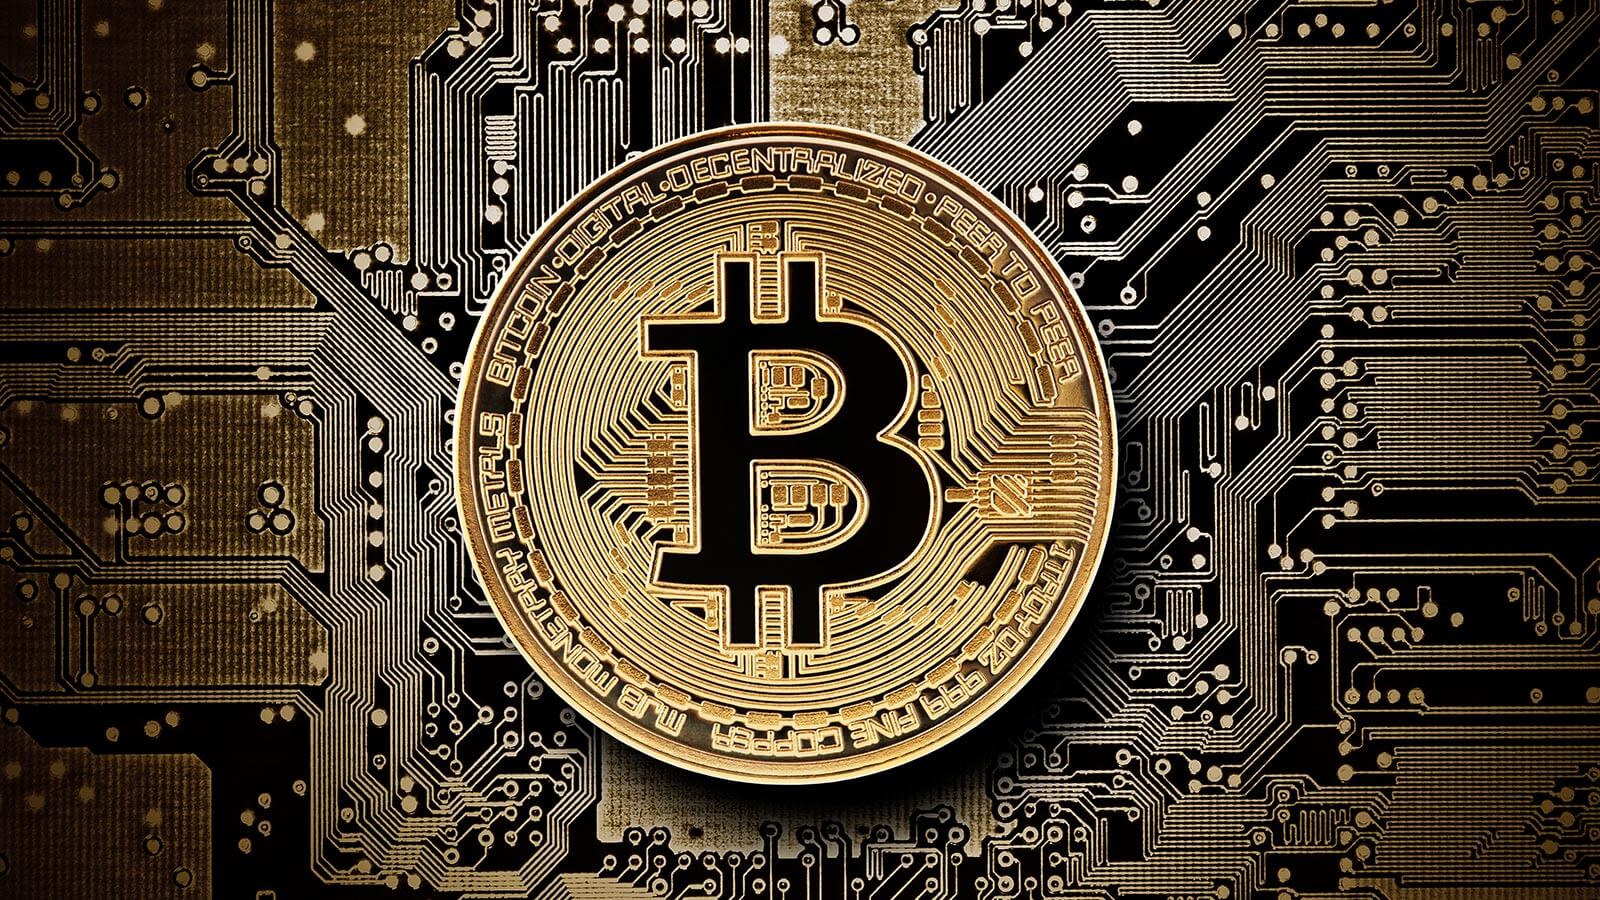   Bitcoin: Worth £30,000